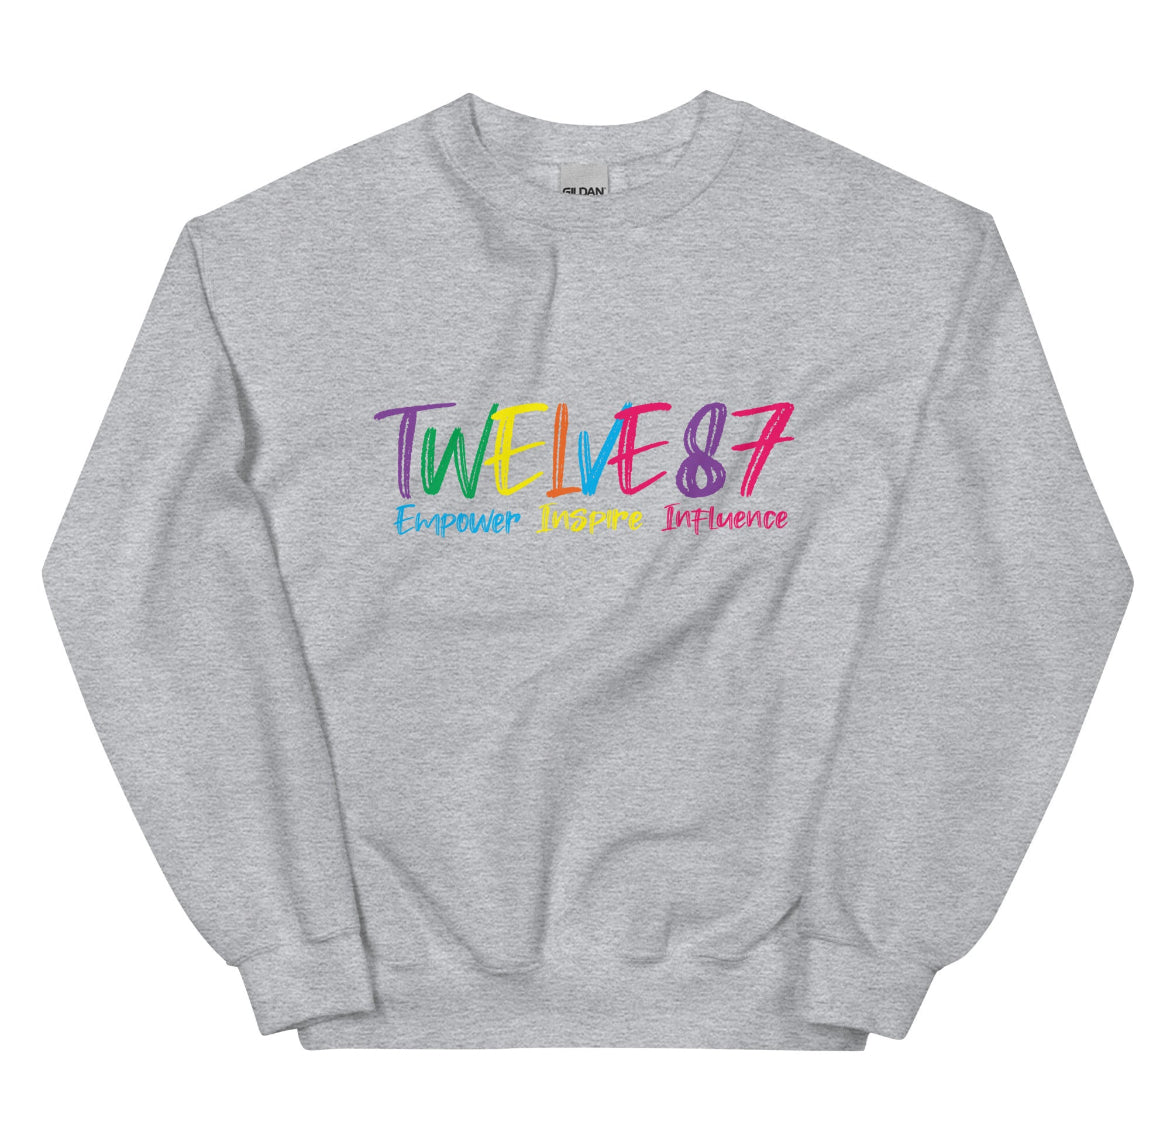 Twelve 87 Brand Sweatshirt